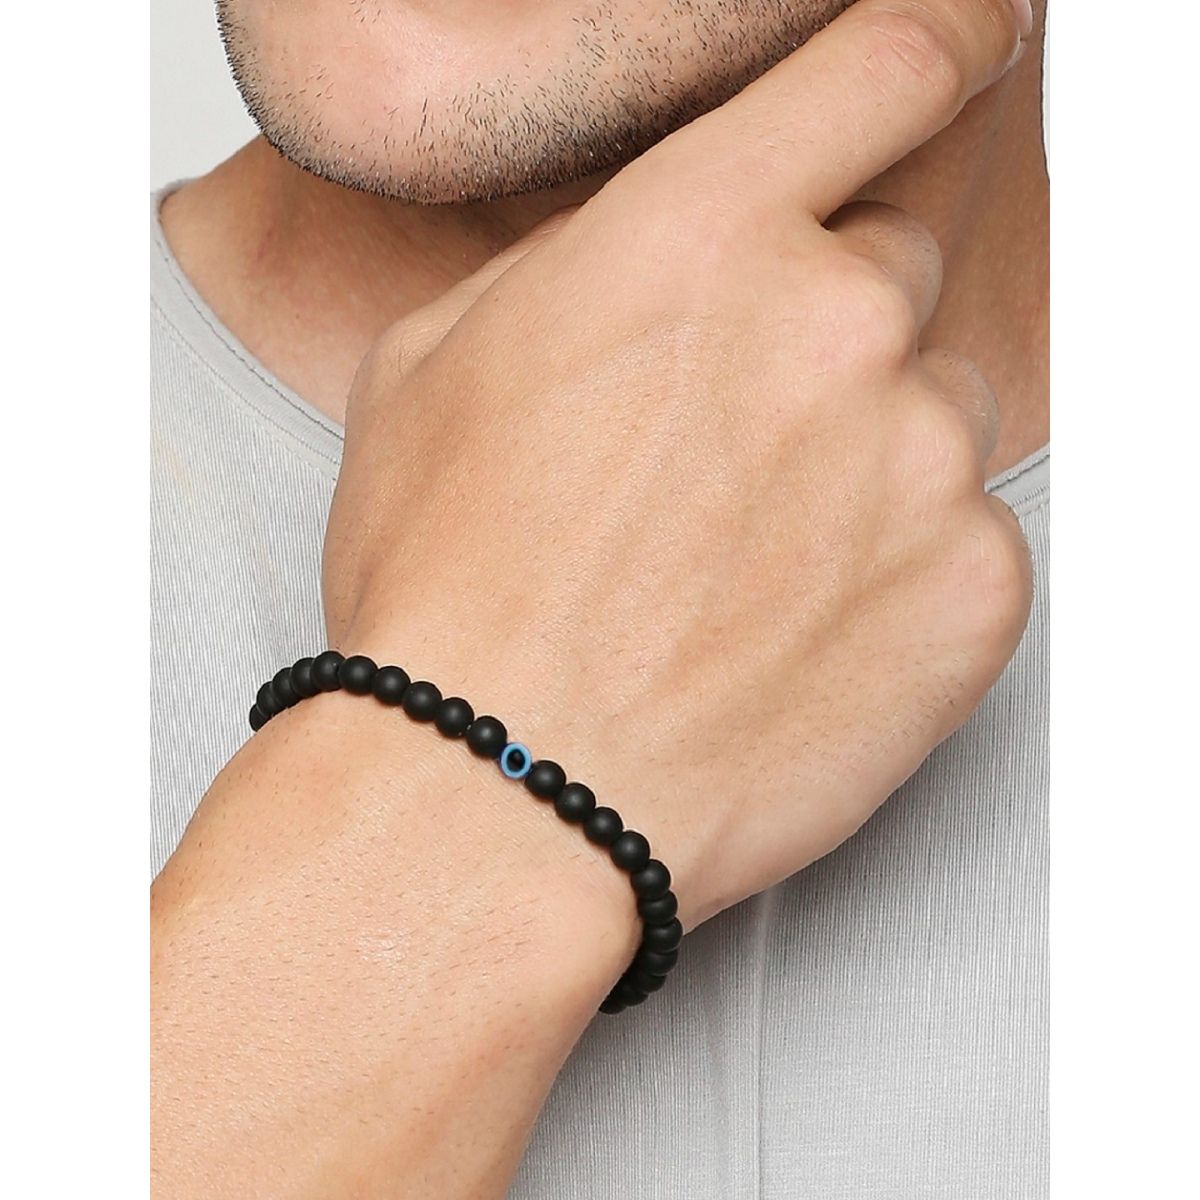 Buy Jewel string black satin adjustable Bracelet for men at Amazonin